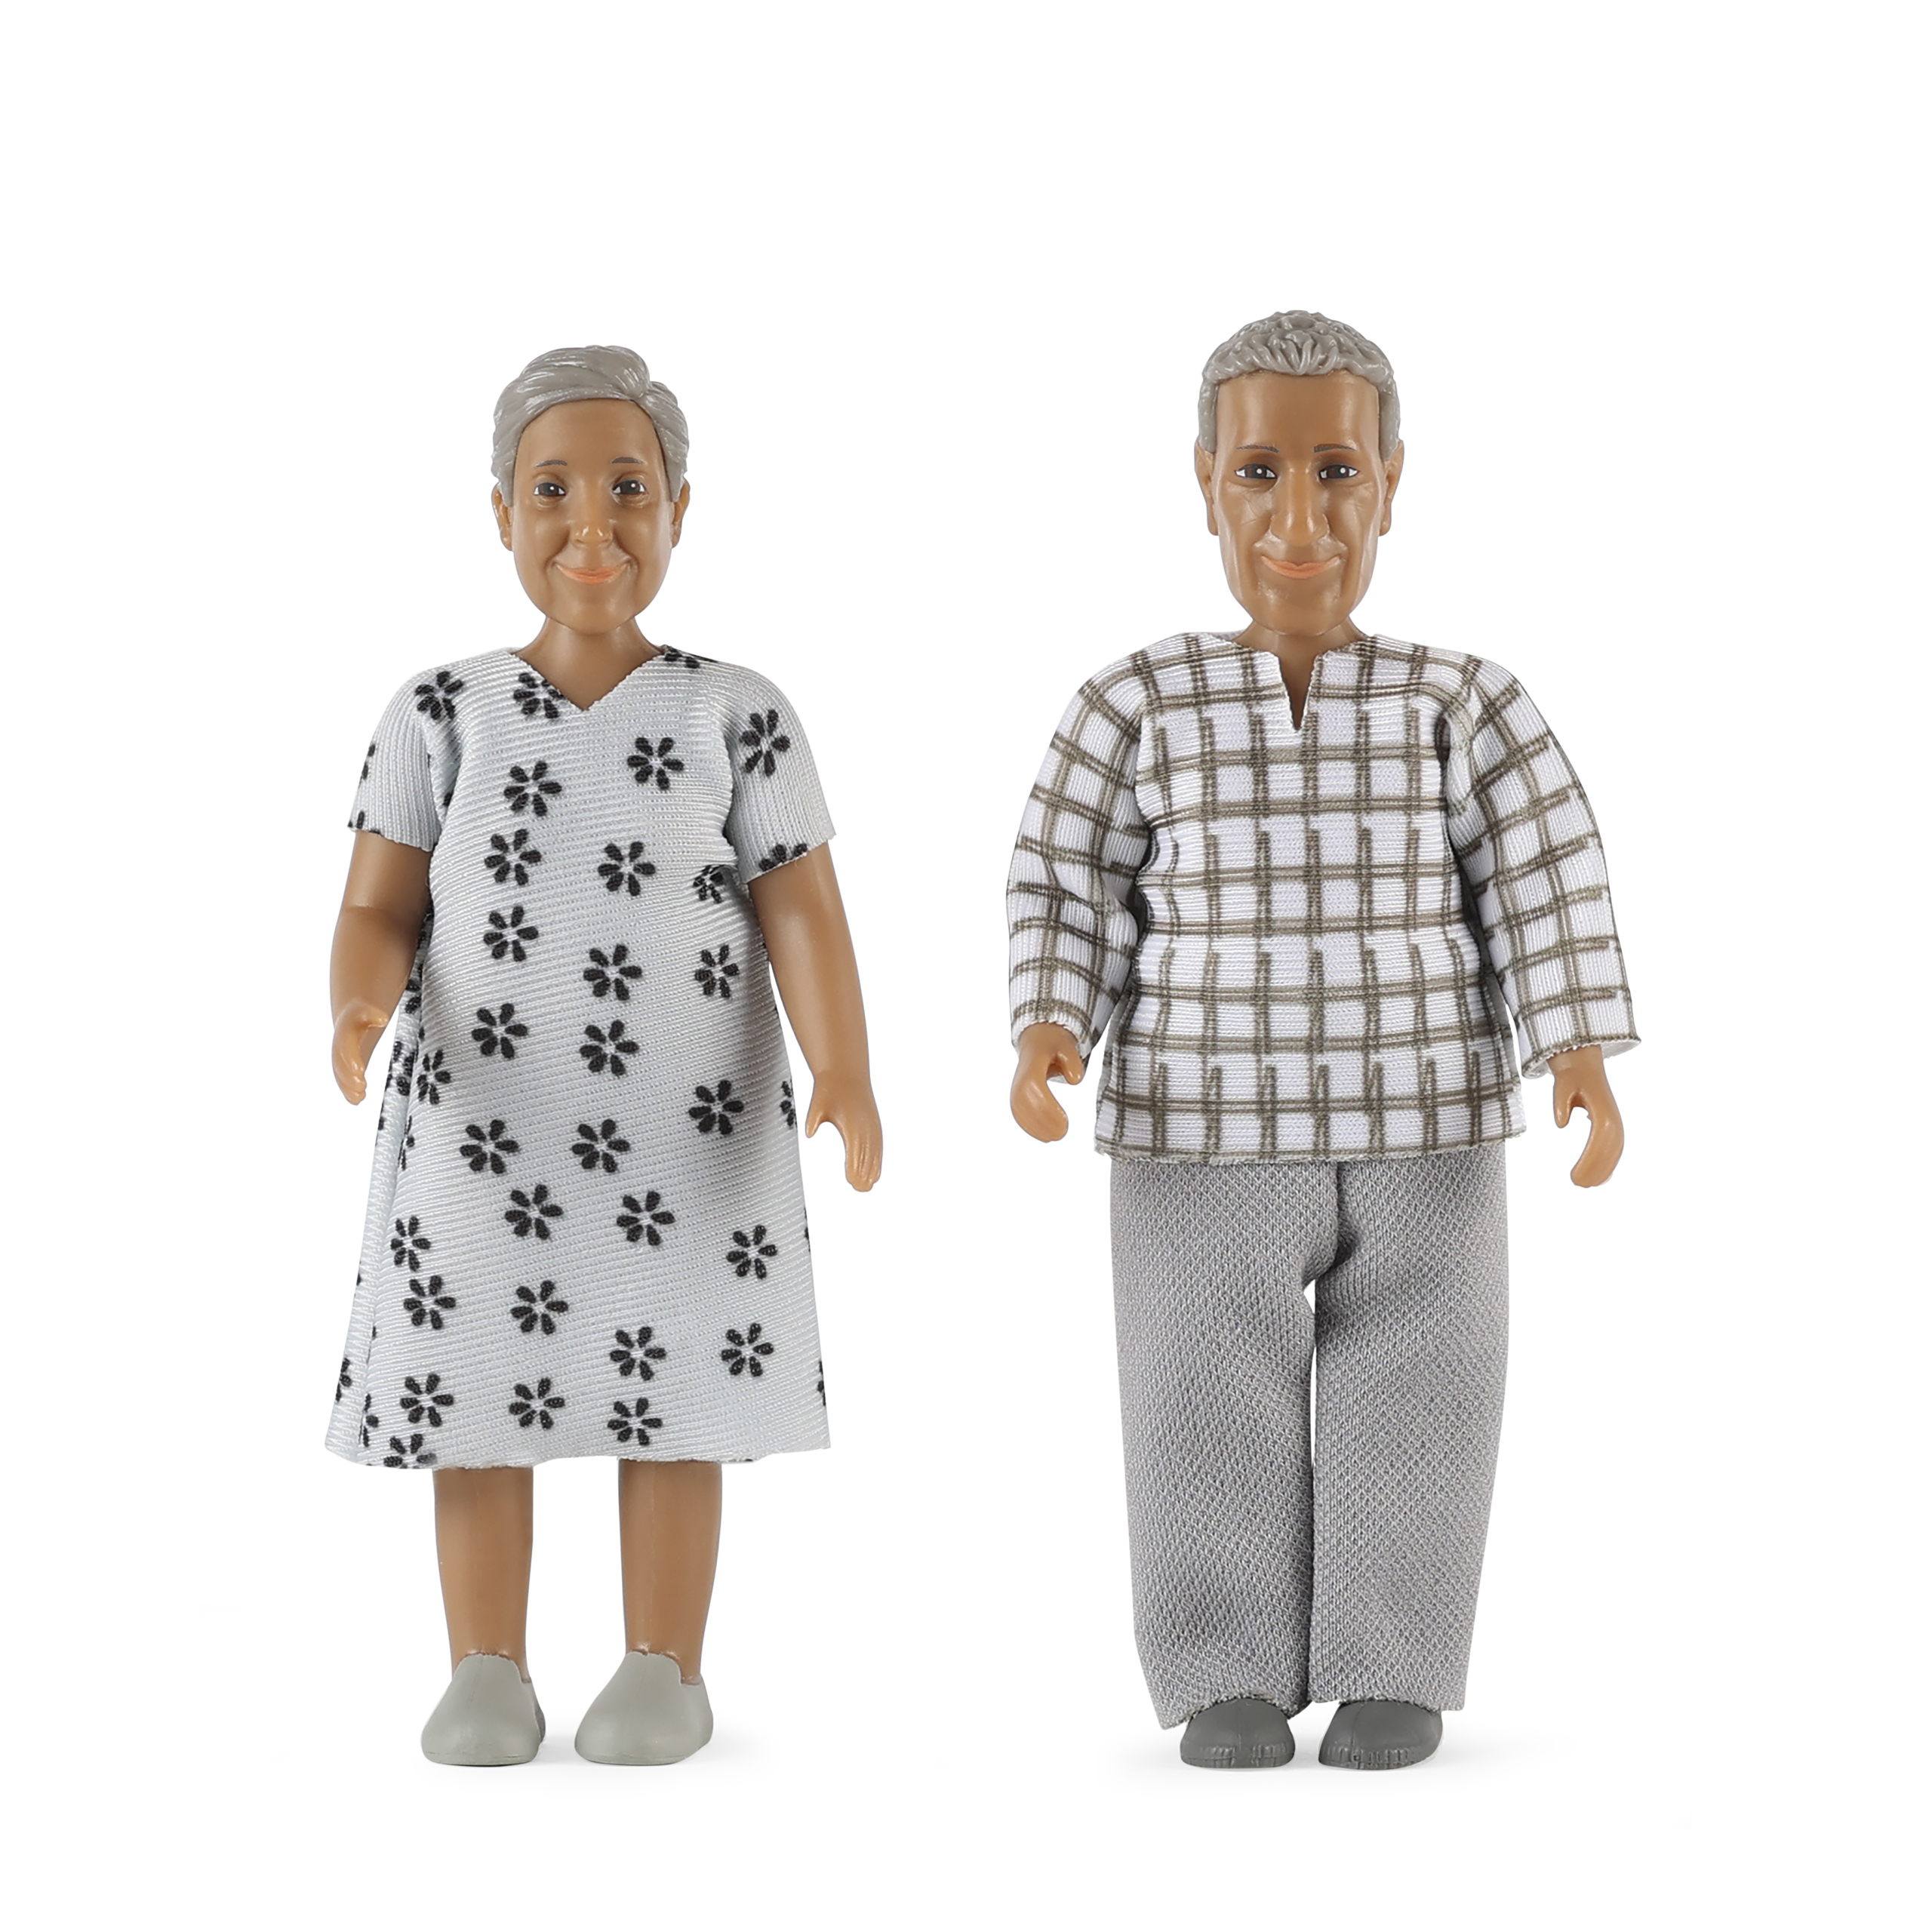 Lundby lundby	dollshouse dolls elderly couple nikki